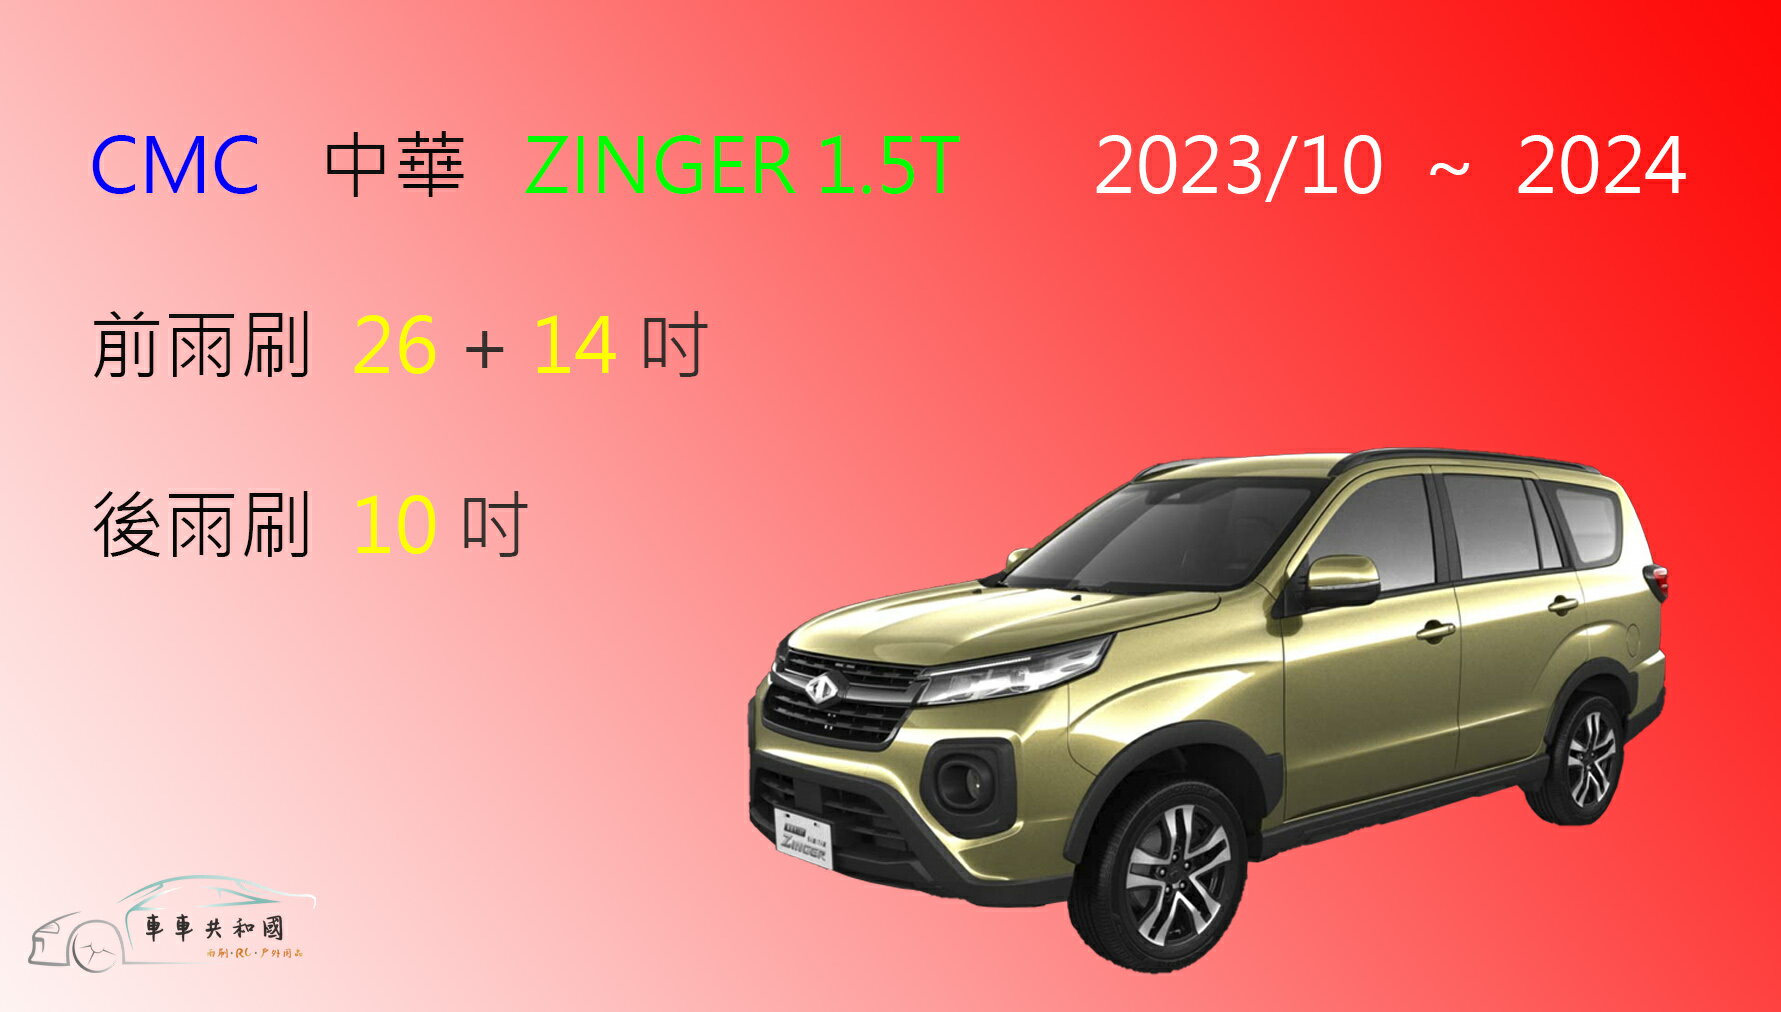 【車車共和國】CMC 中華 新世代 Zinger 1.5T 矽膠雨刷 軟骨雨刷 後雨刷 雨刷錠 2023/10以後